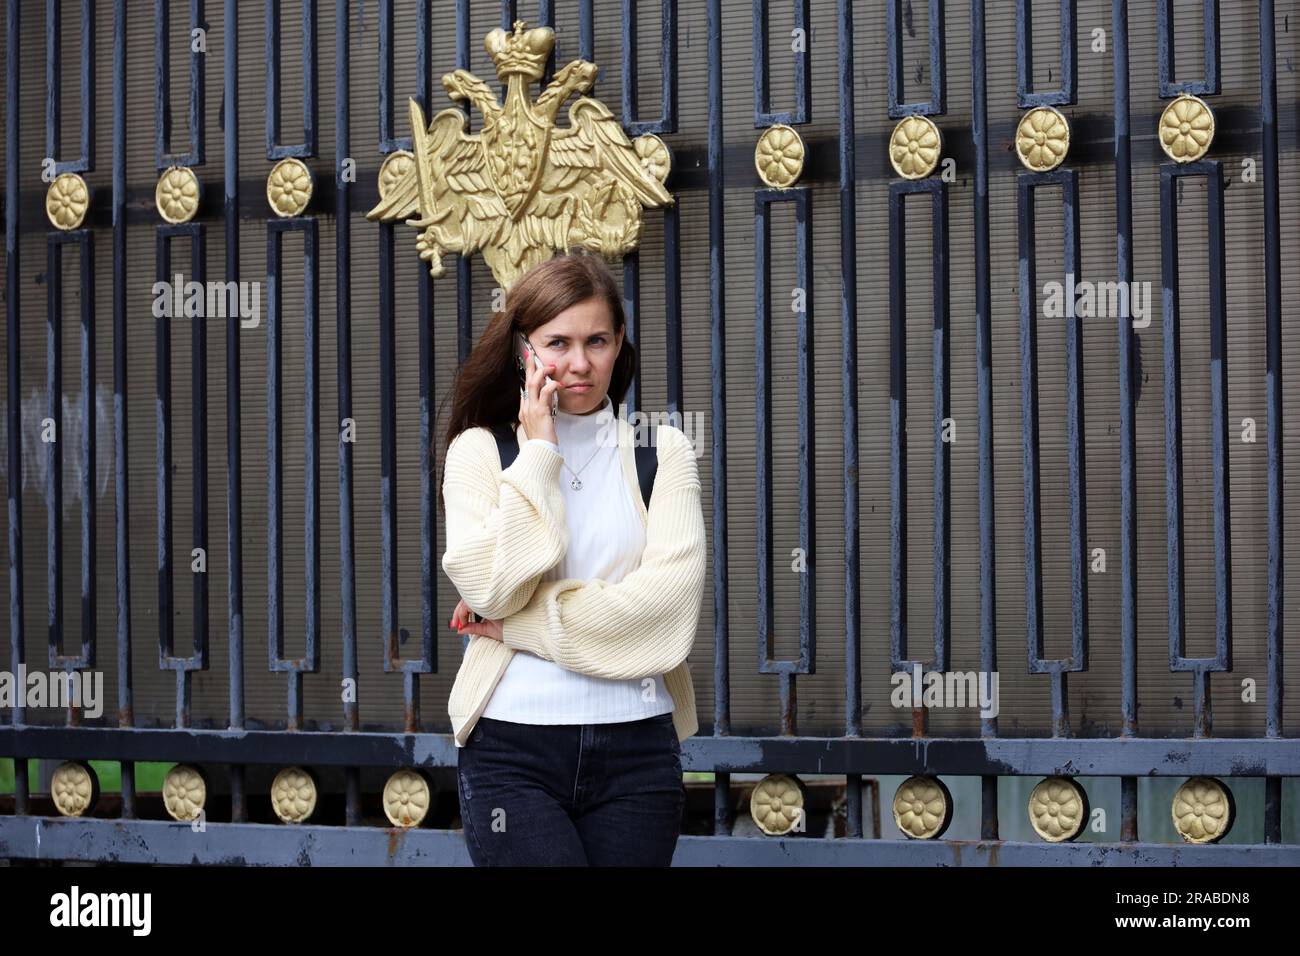 Donna che parla al cellulare in una strada cittadina in piedi vicino alla recinzione con l'emblema ufficiale del Ministero della difesa della Russia Foto Stock